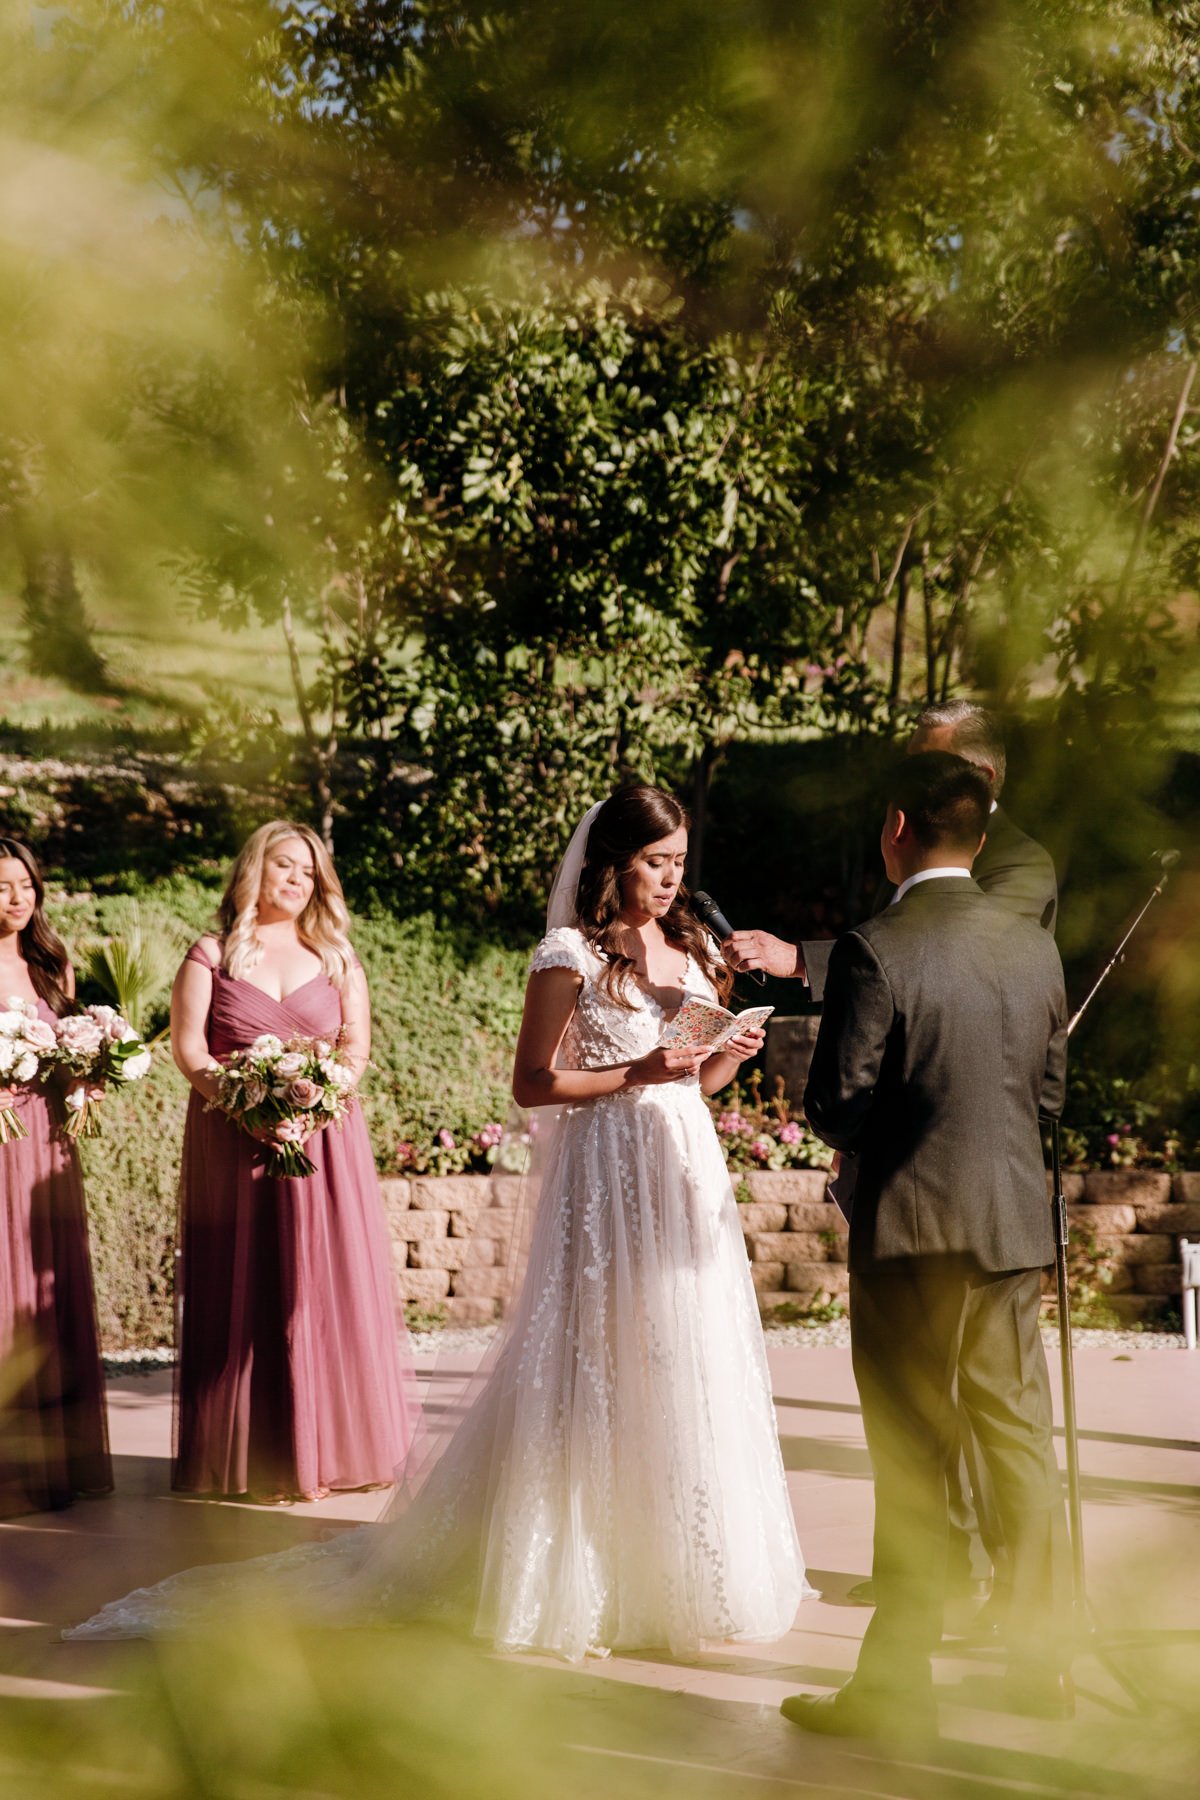 Ethereal Gardens Wedding Photographer, Escondido Wedding Photographer, San Diego Wedding Photographer, Ethereal Gardens Wedding, Escondido Wedding, SD Wedding Photographer, Southern California Wedding